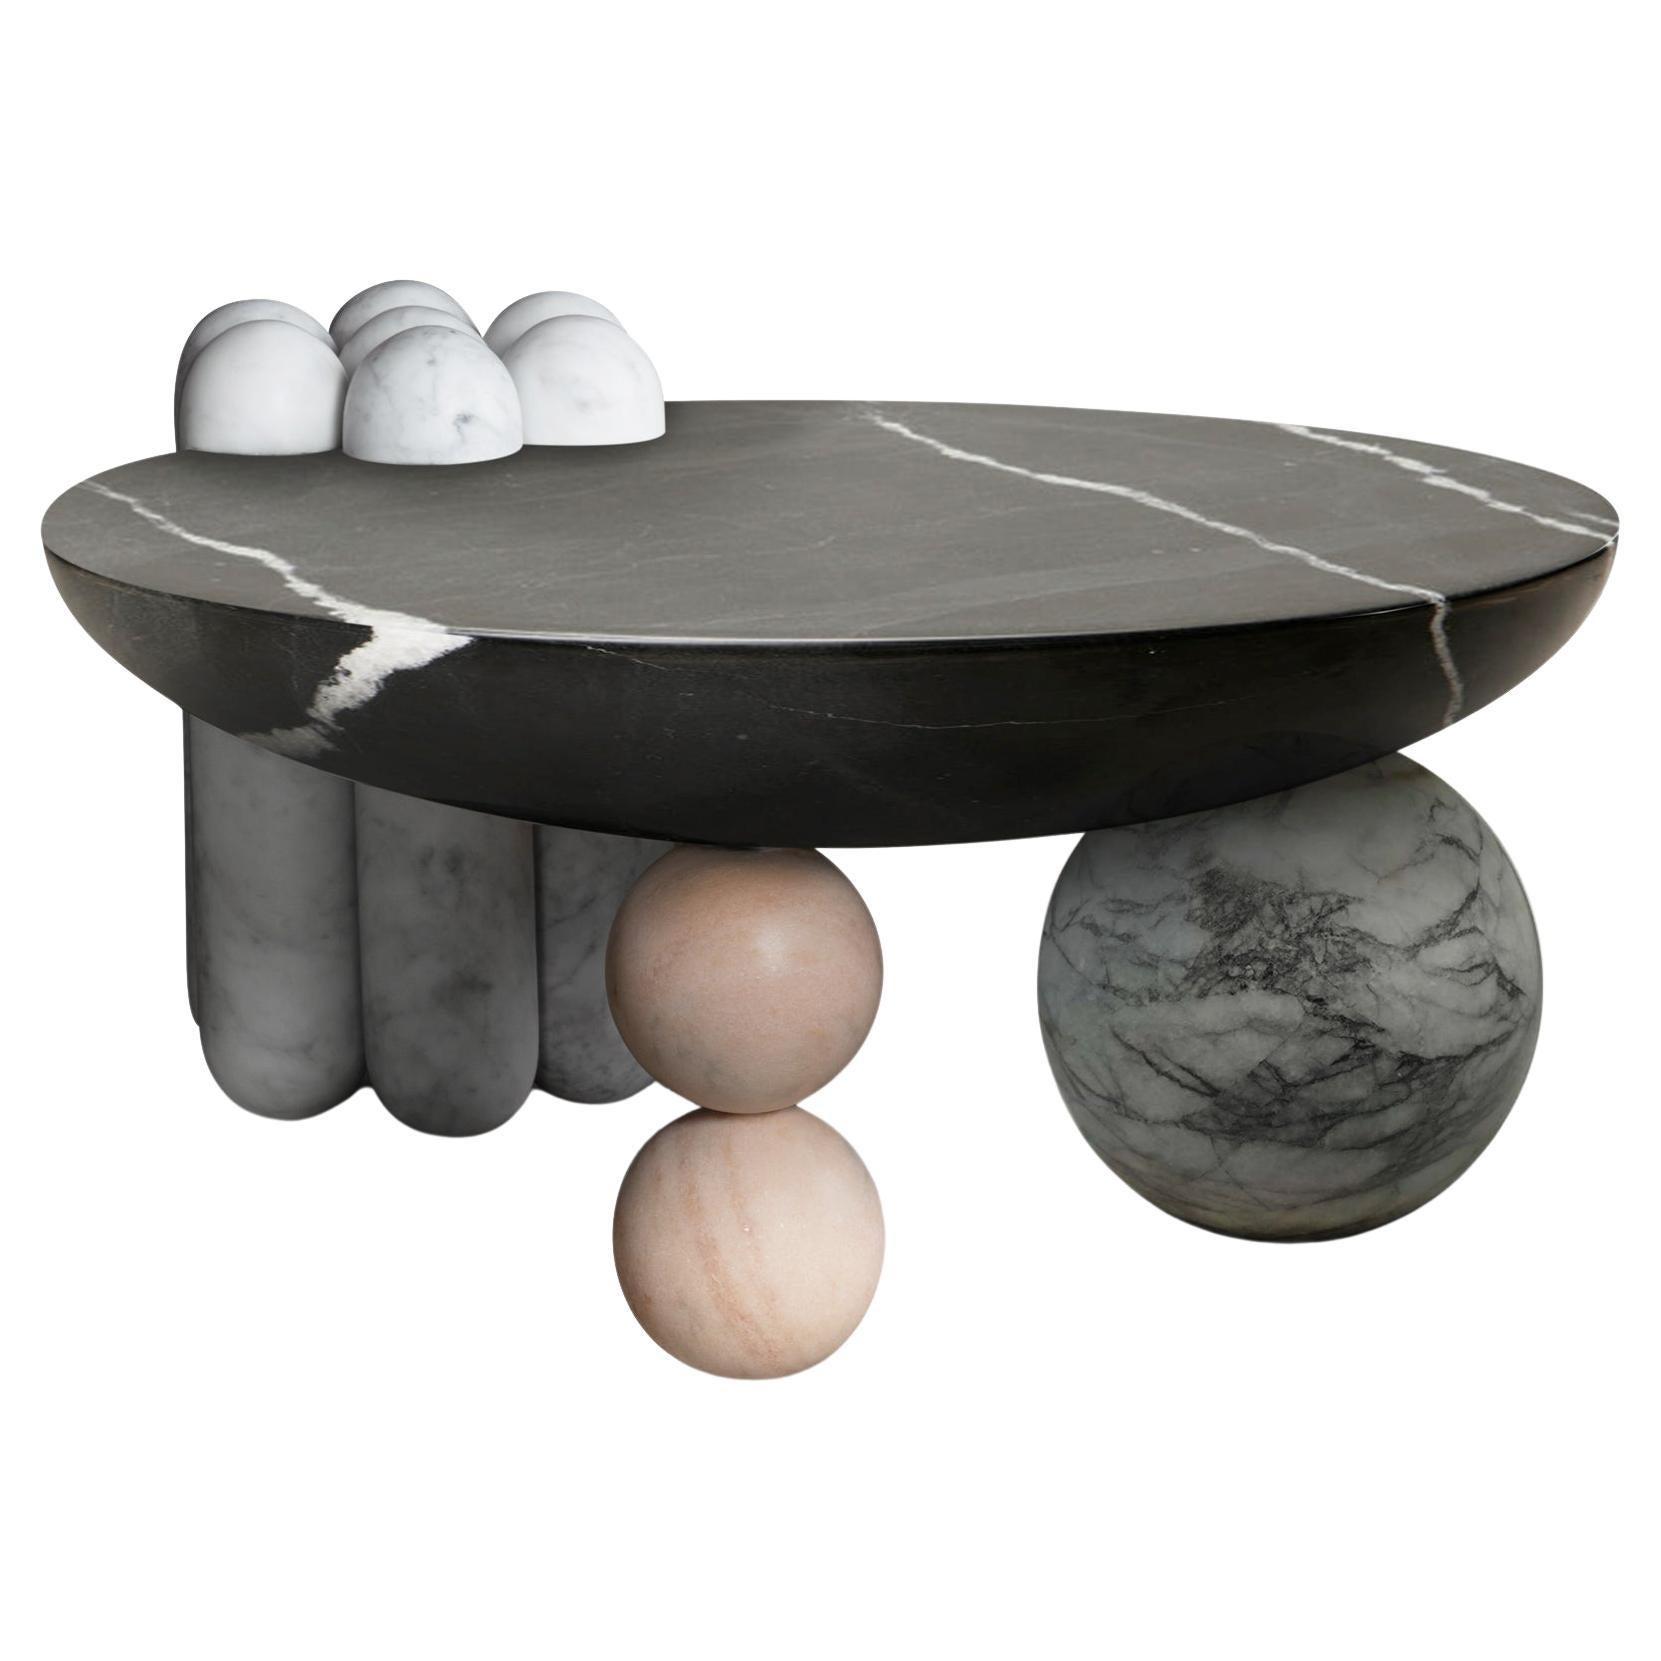 Sculptural Patisserie Coffee Table by Lara Bohinc, Black Marble